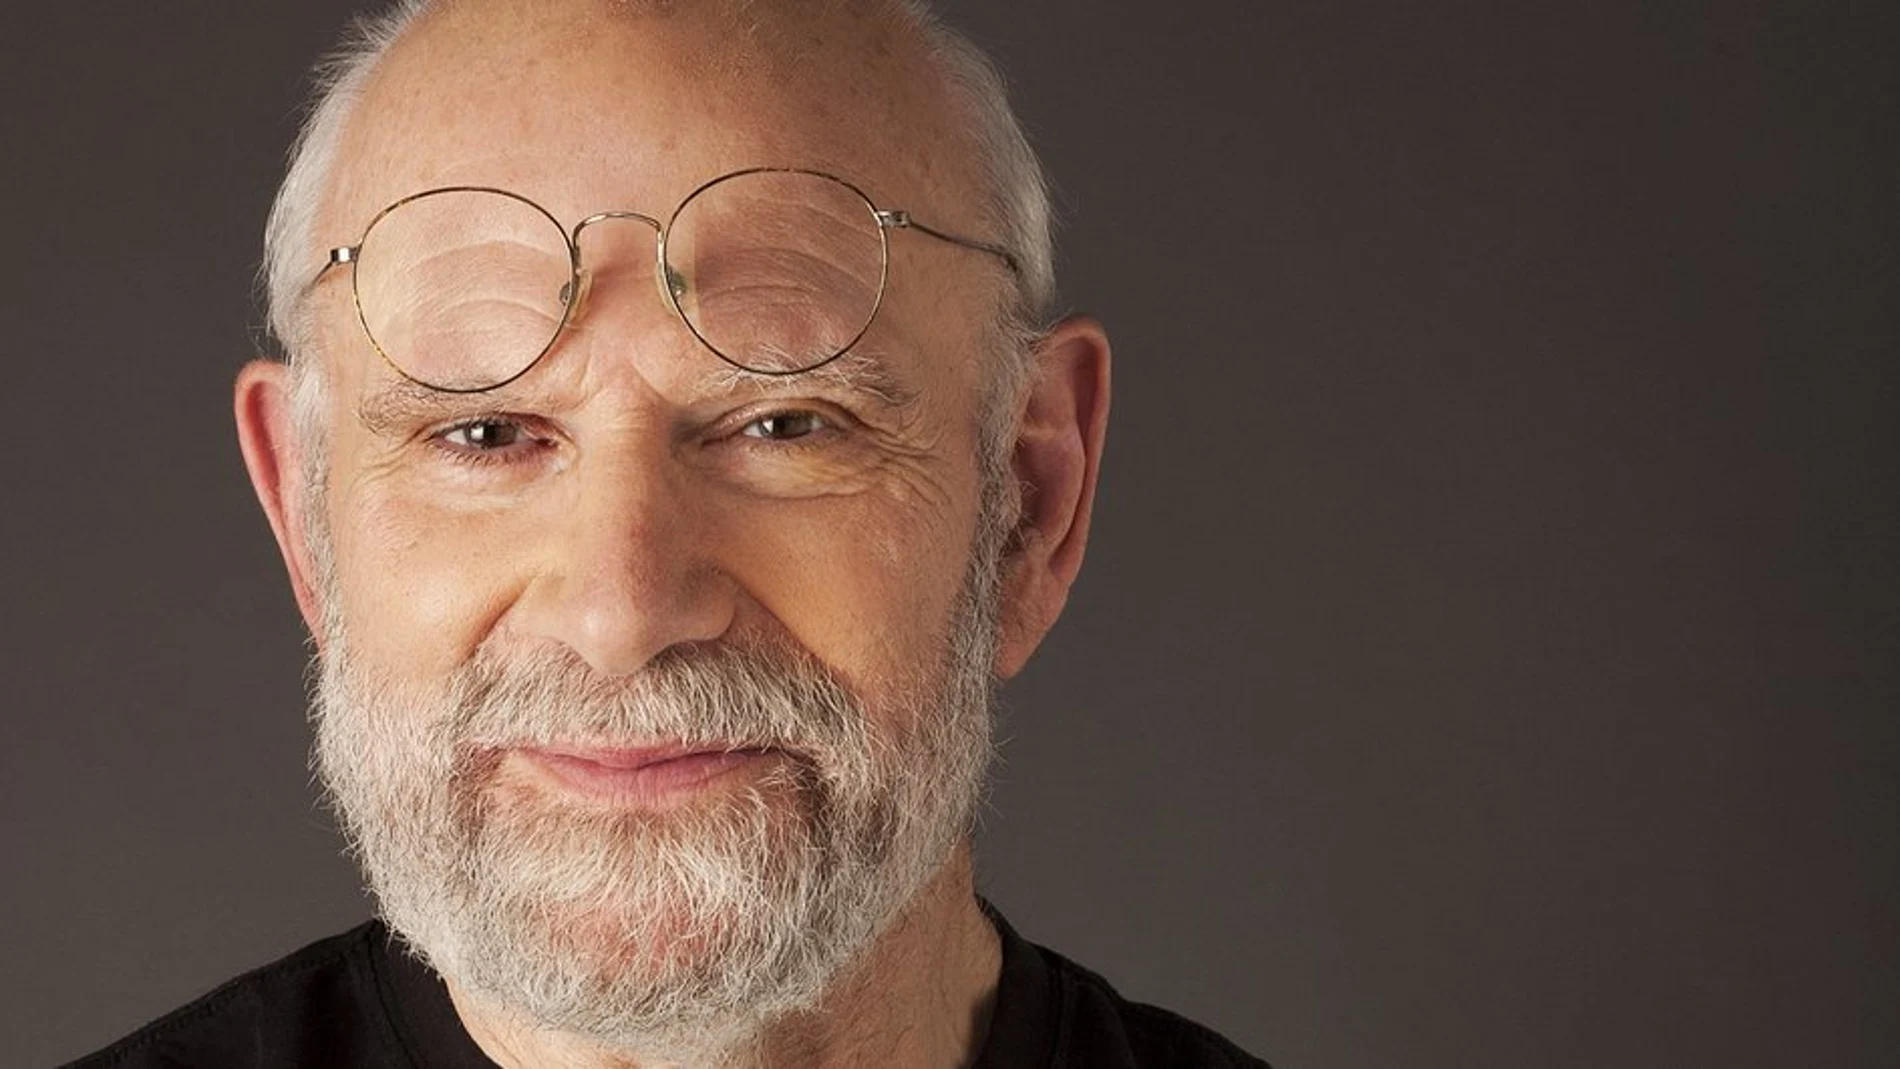 Oliver Sacks, el científico al que llamaban “escritor” como insulto